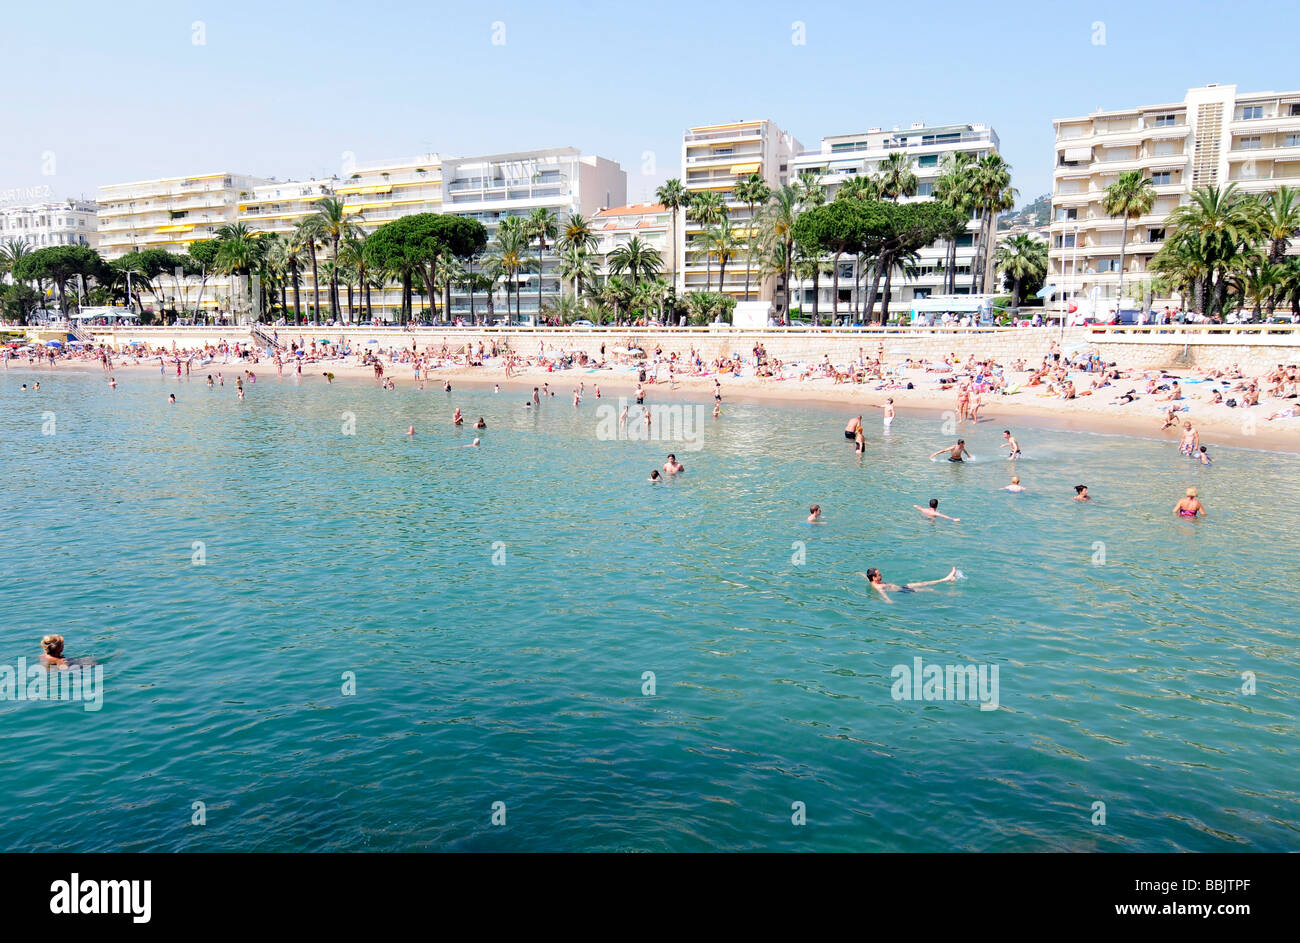 La plage principale, sur la Croisette, dans le centre de Cannes, Côte d'azur, au cours de la célèbre festival du film. Le sud de la France. Banque D'Images